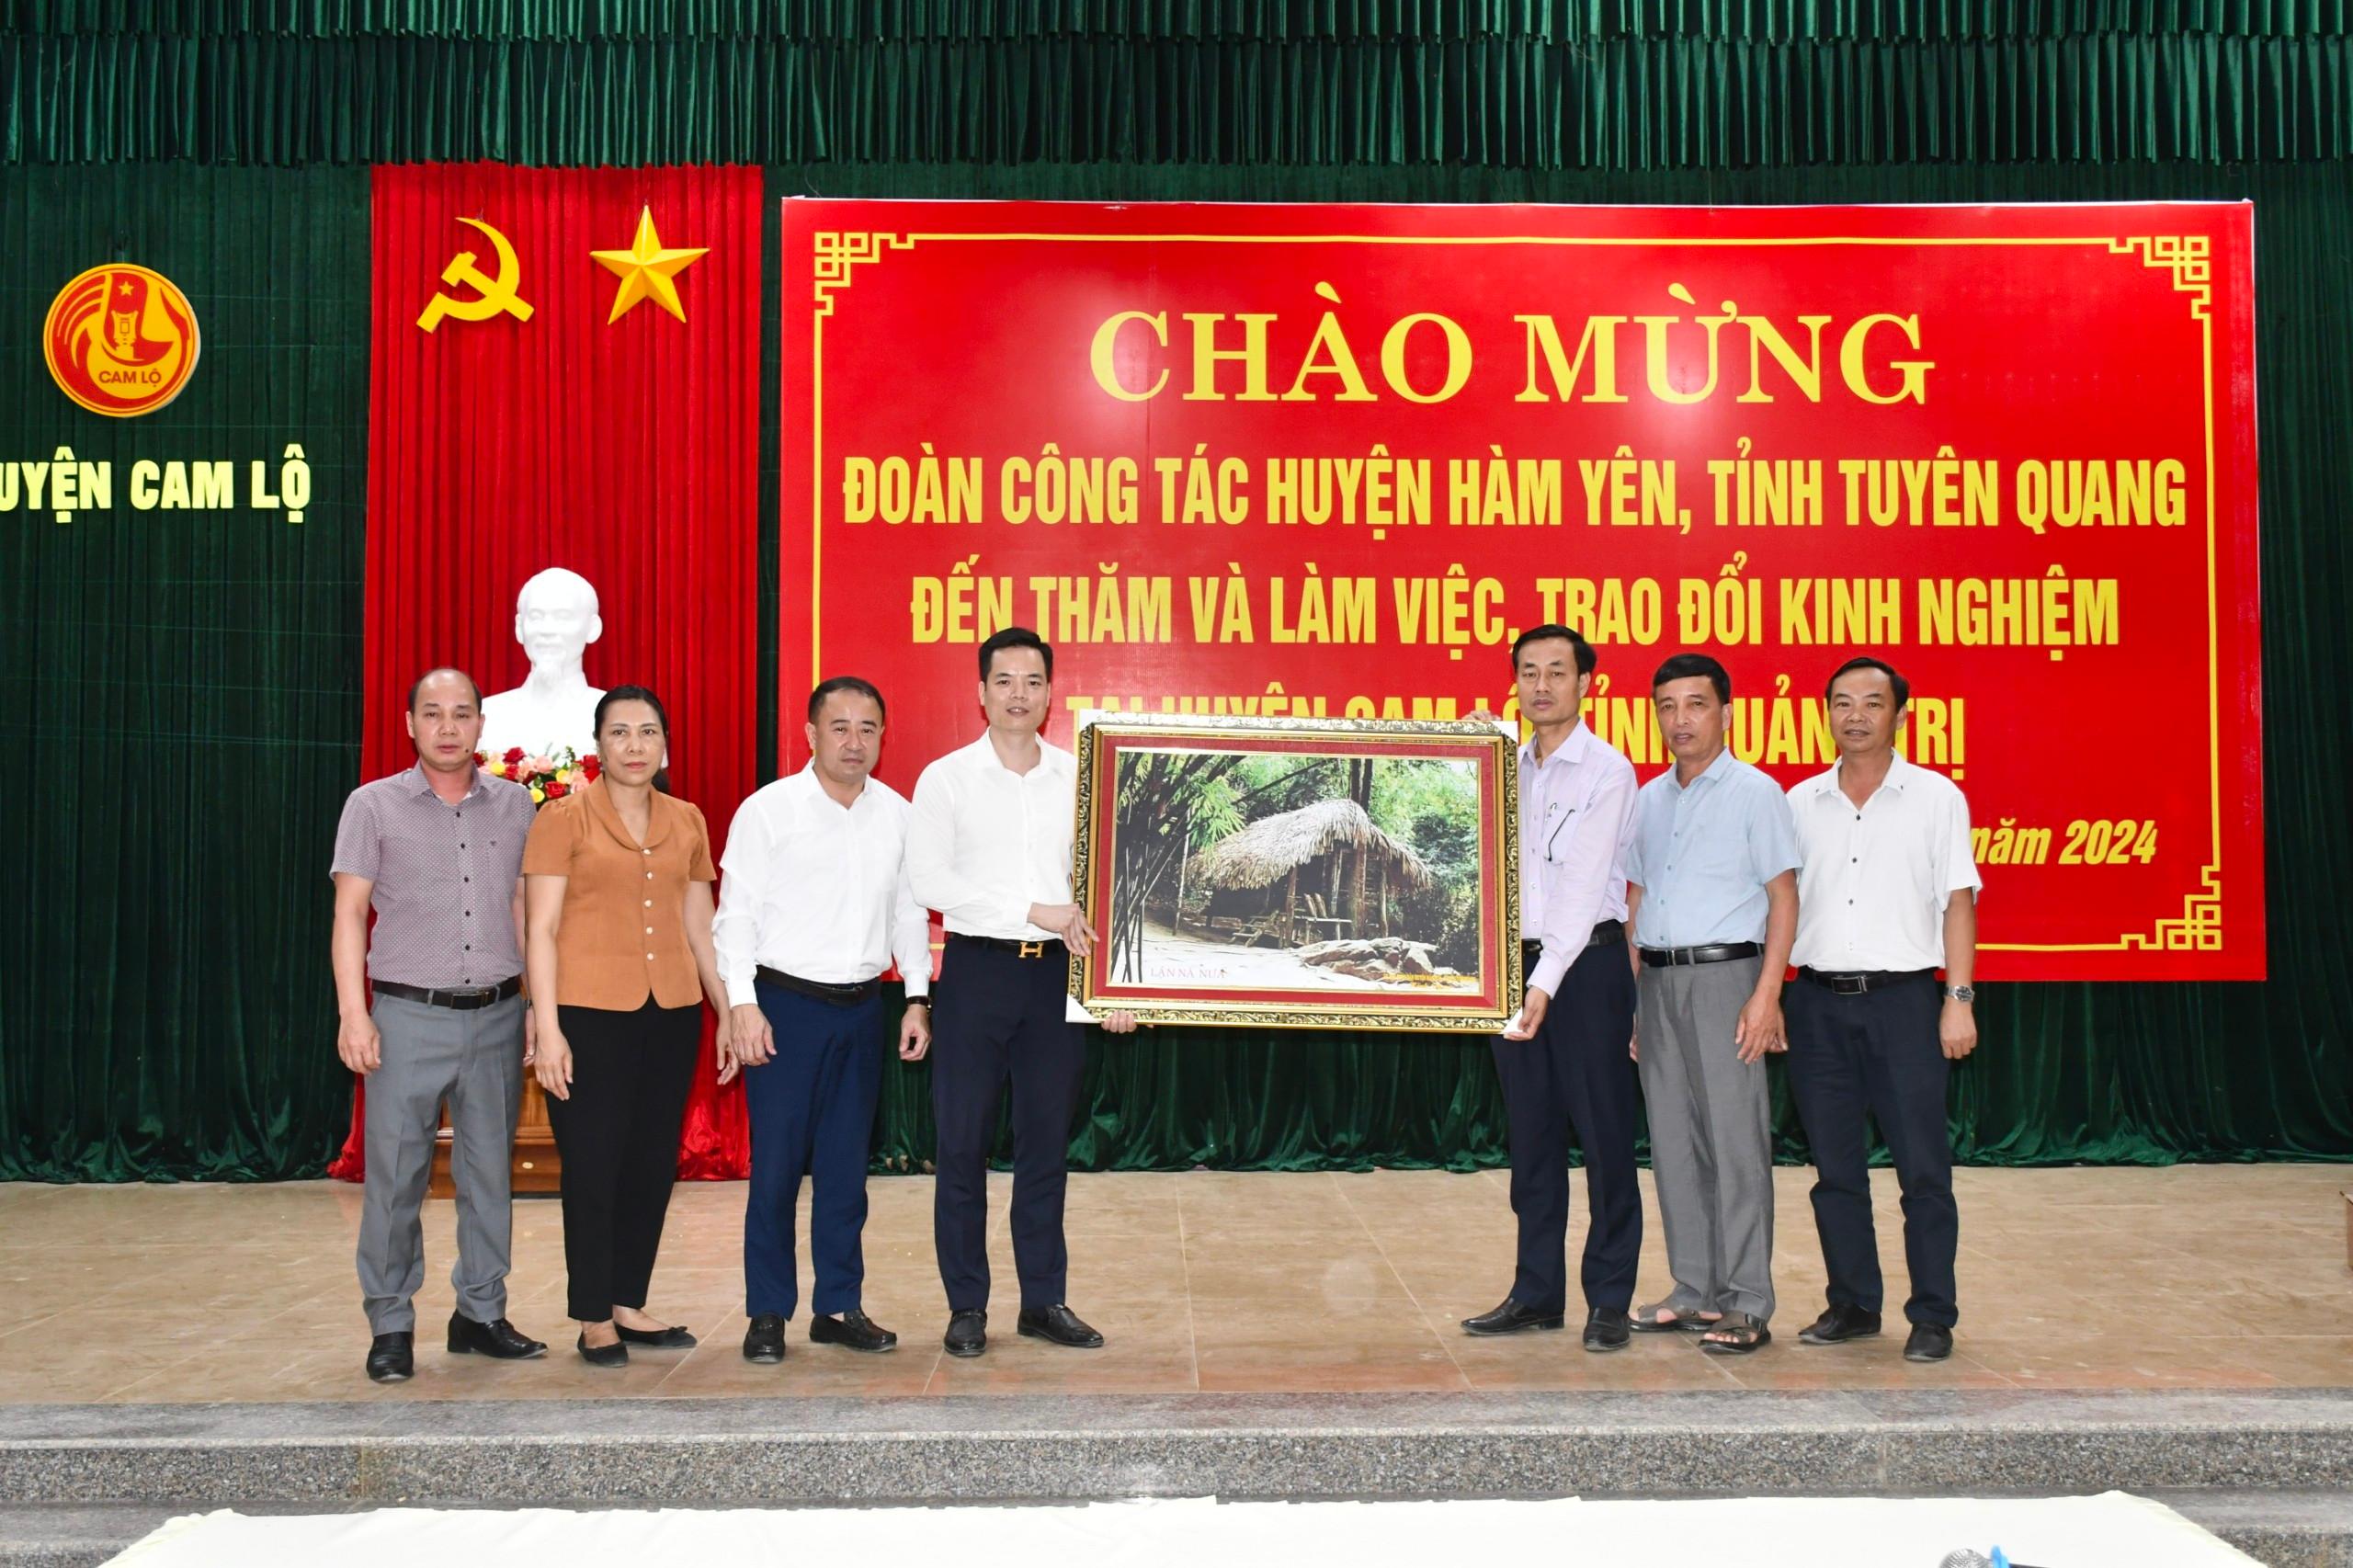 Đoàn công tác huyện Hàm Yên, tỉnh Tuyên Quang thăm và làm việc, trao đổi kinh nghiệm giảm nghèo...